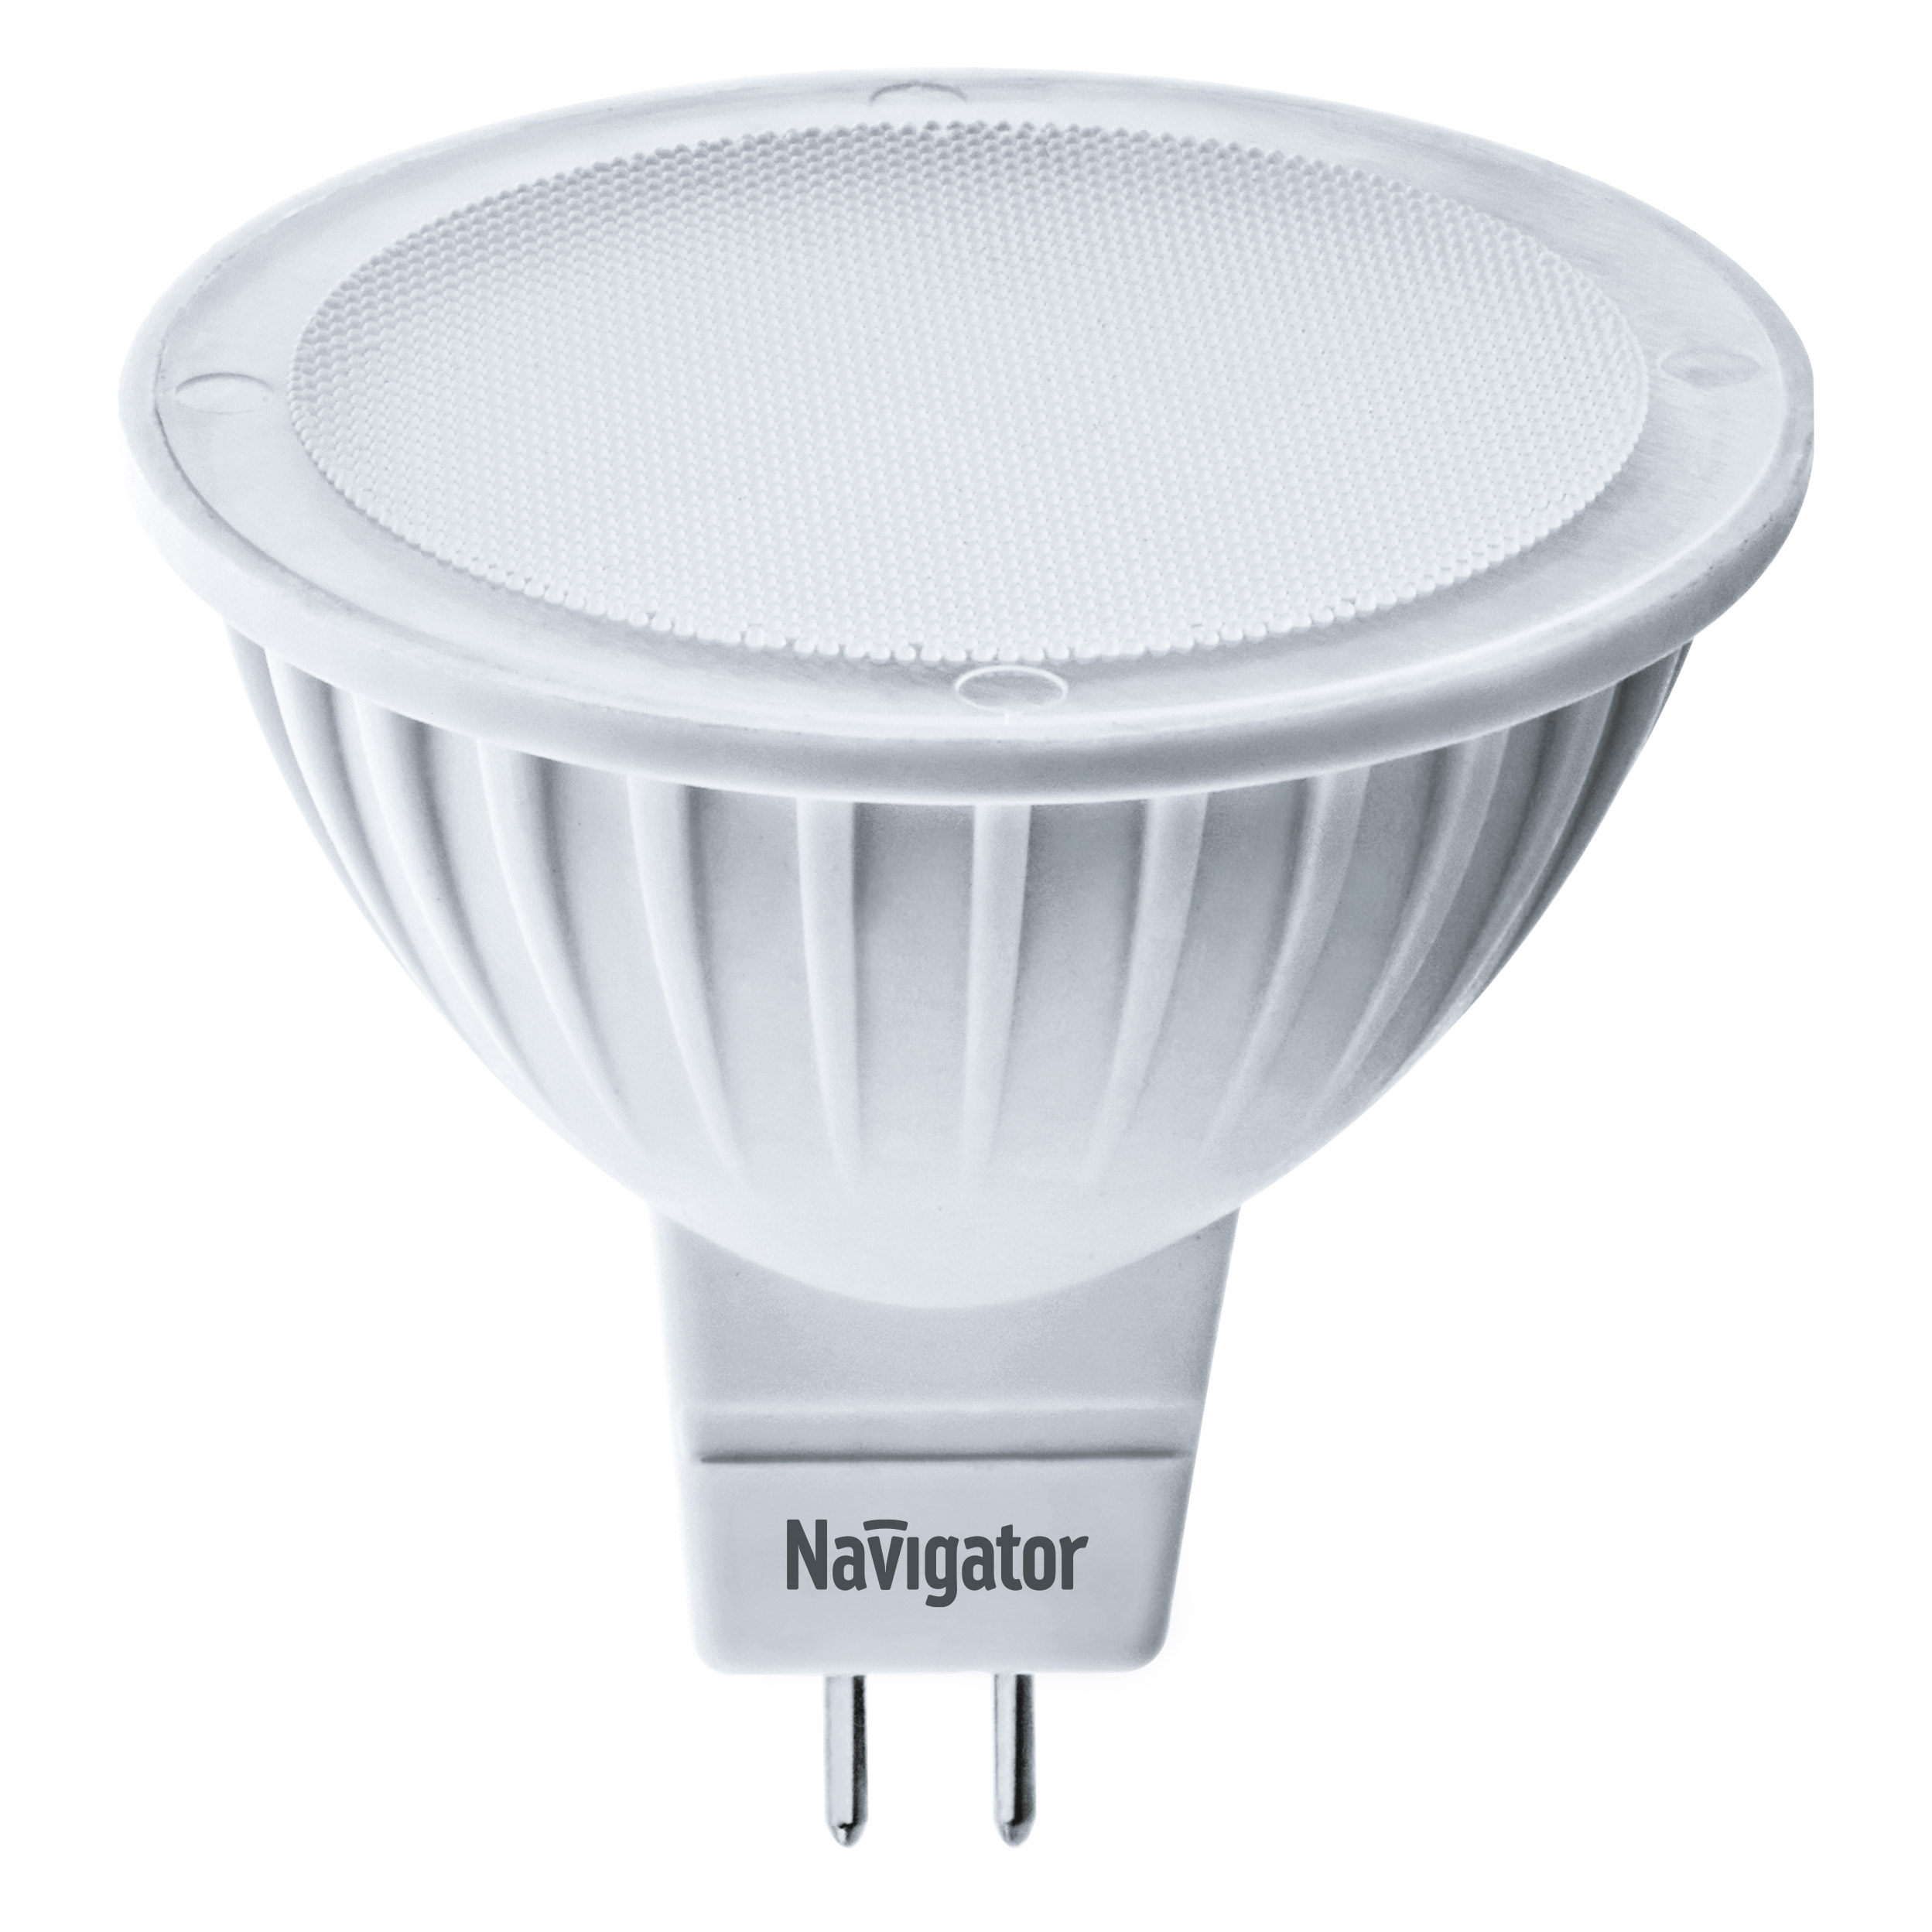 Лампа светодиодная Navigator MR16 3Вт 230В цоколь GU5.3 (теплый свет) лампа светодиодная navigator зеркальная r50 5вт цоколь e14 теплый свет